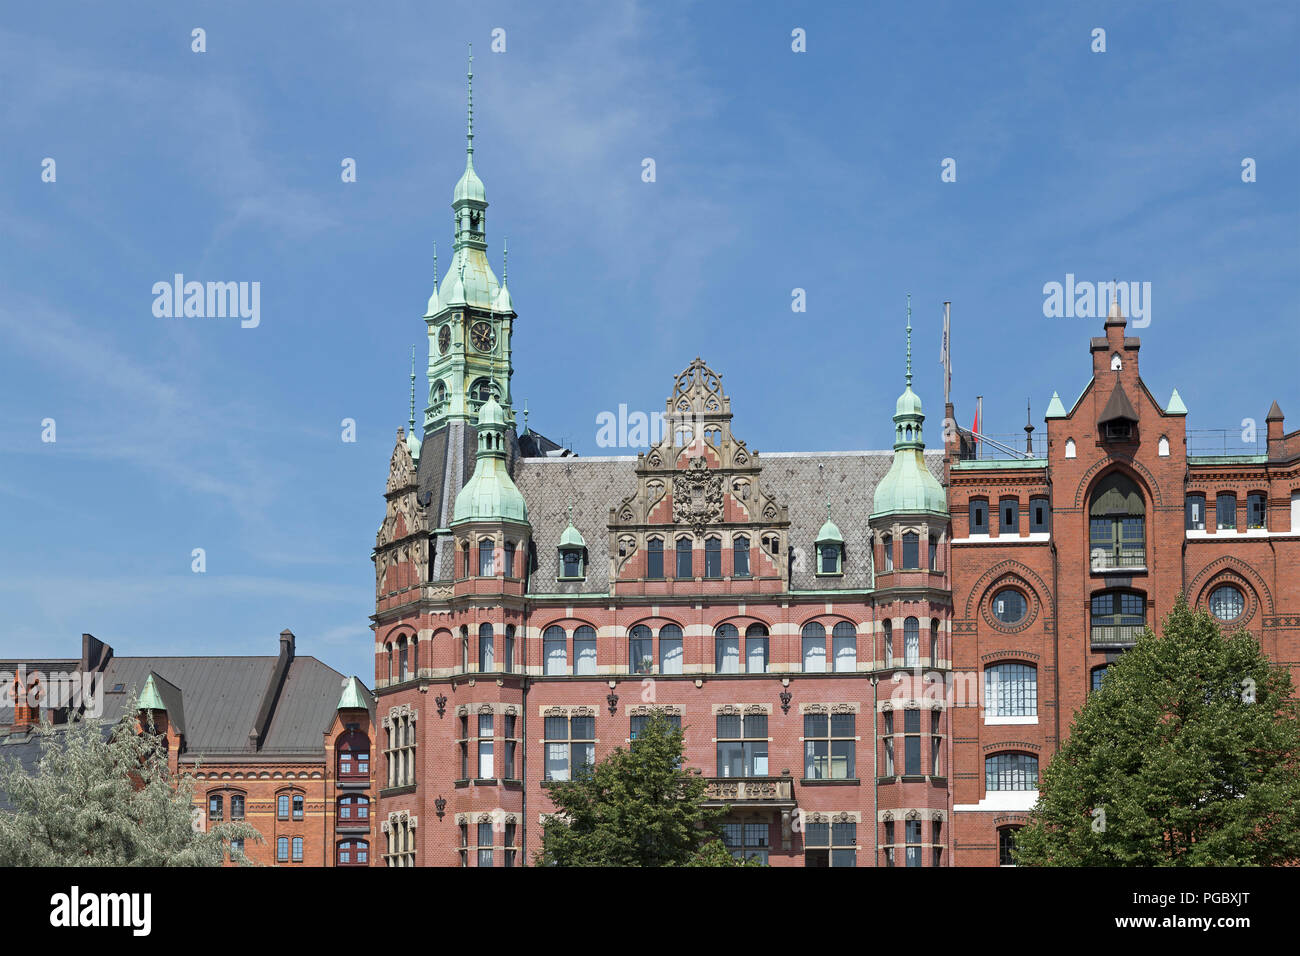 Die so genannte Rathaus der Speicherstadt (Warehouse district), Hamburg, Deutschland Stockfoto